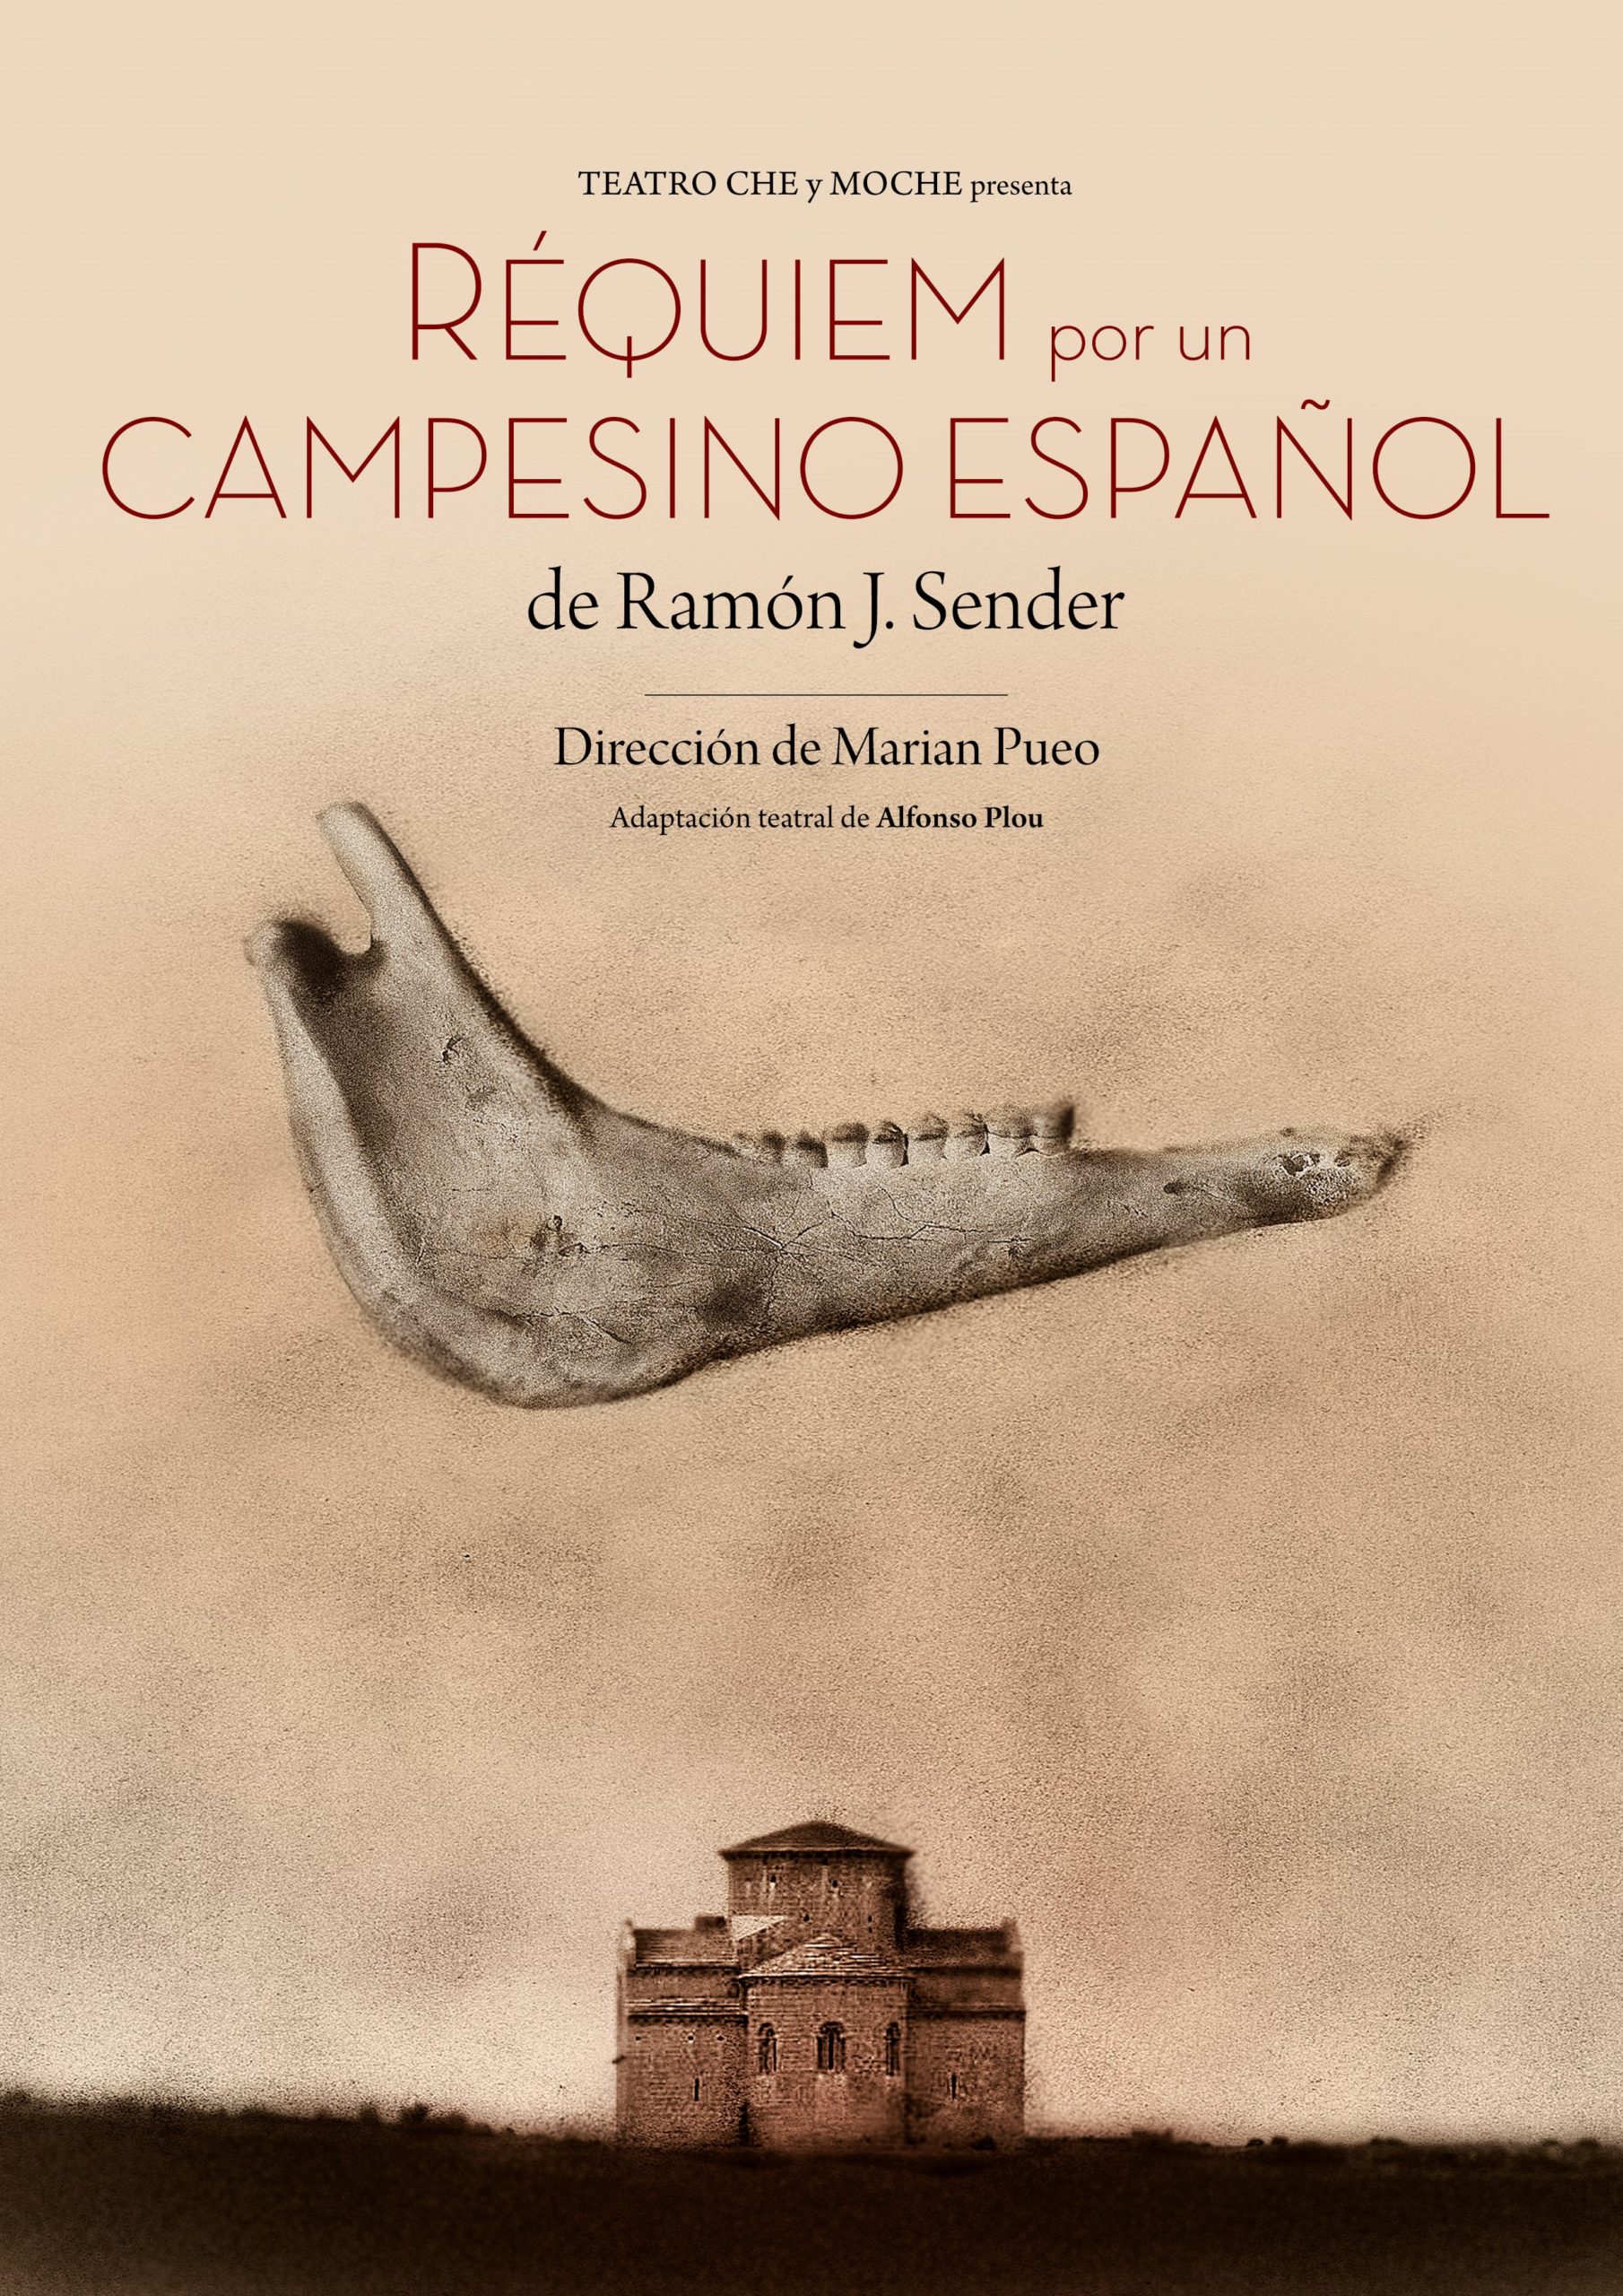 Requiem por un campesino español - AMC Santiago